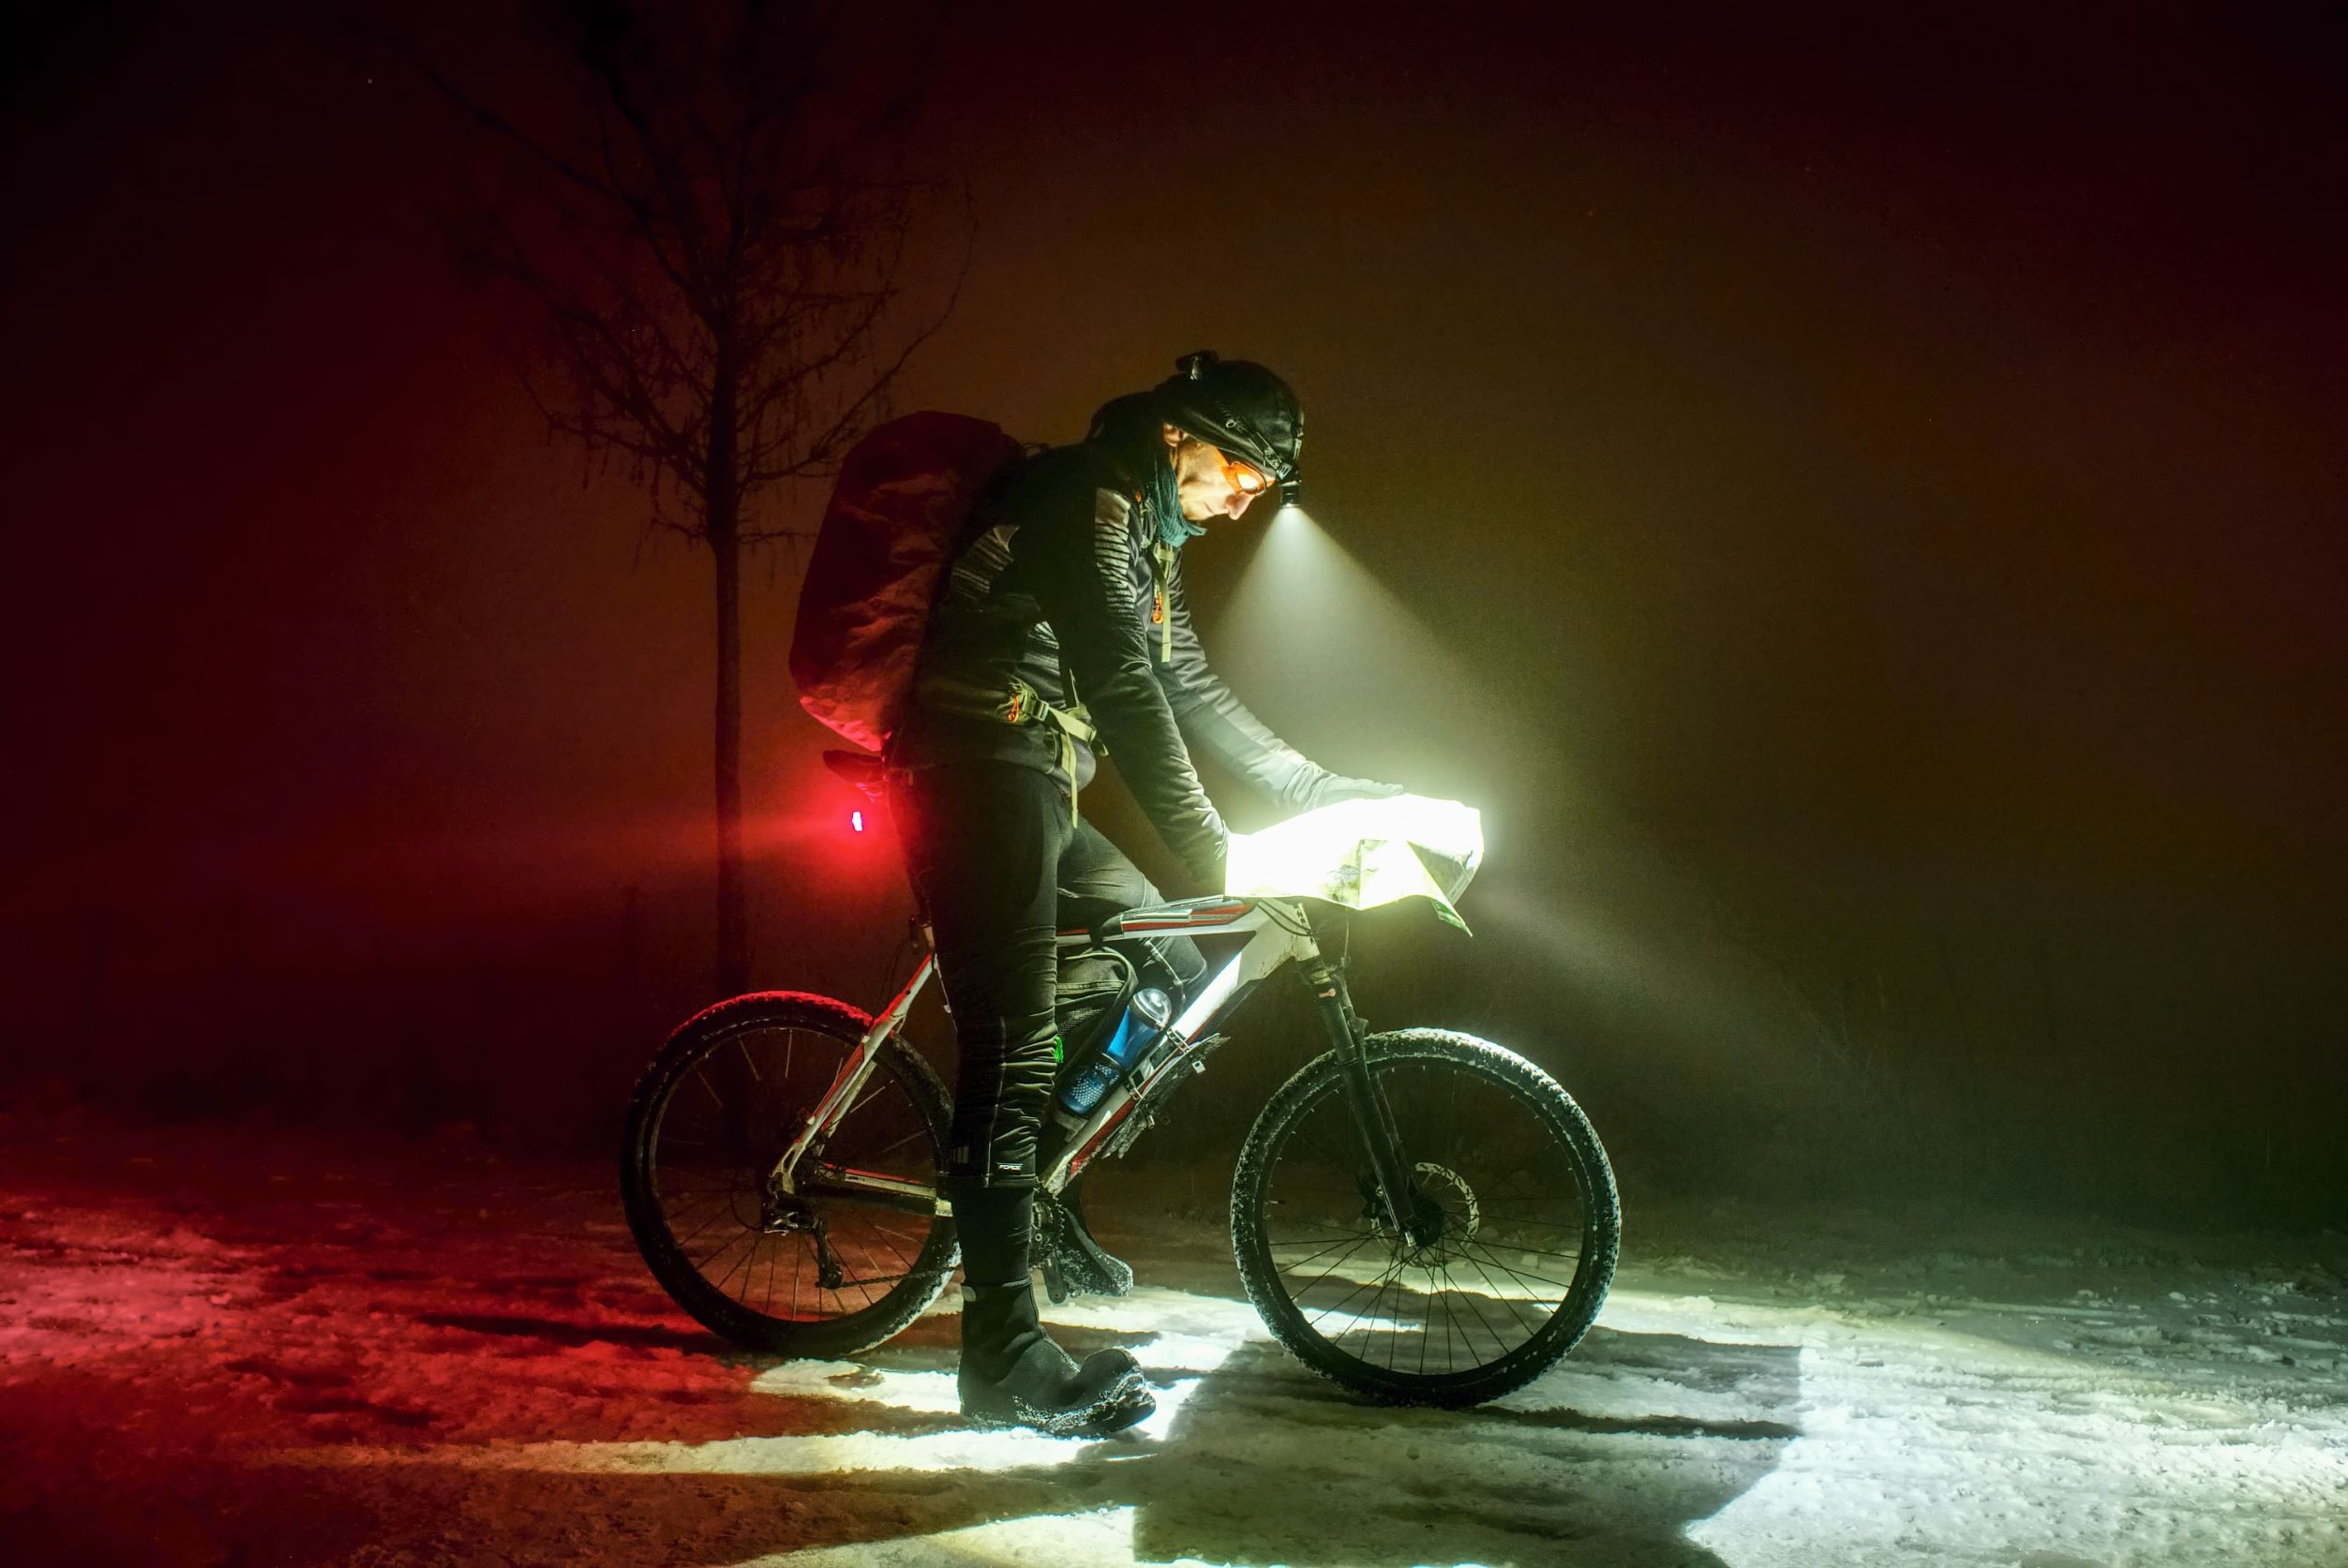 Ein Mann auf einem Fahrrad bei Nacht, mit einem weißen Frontlicht, einem roten Rücklicht und einer Stirnlampe.
